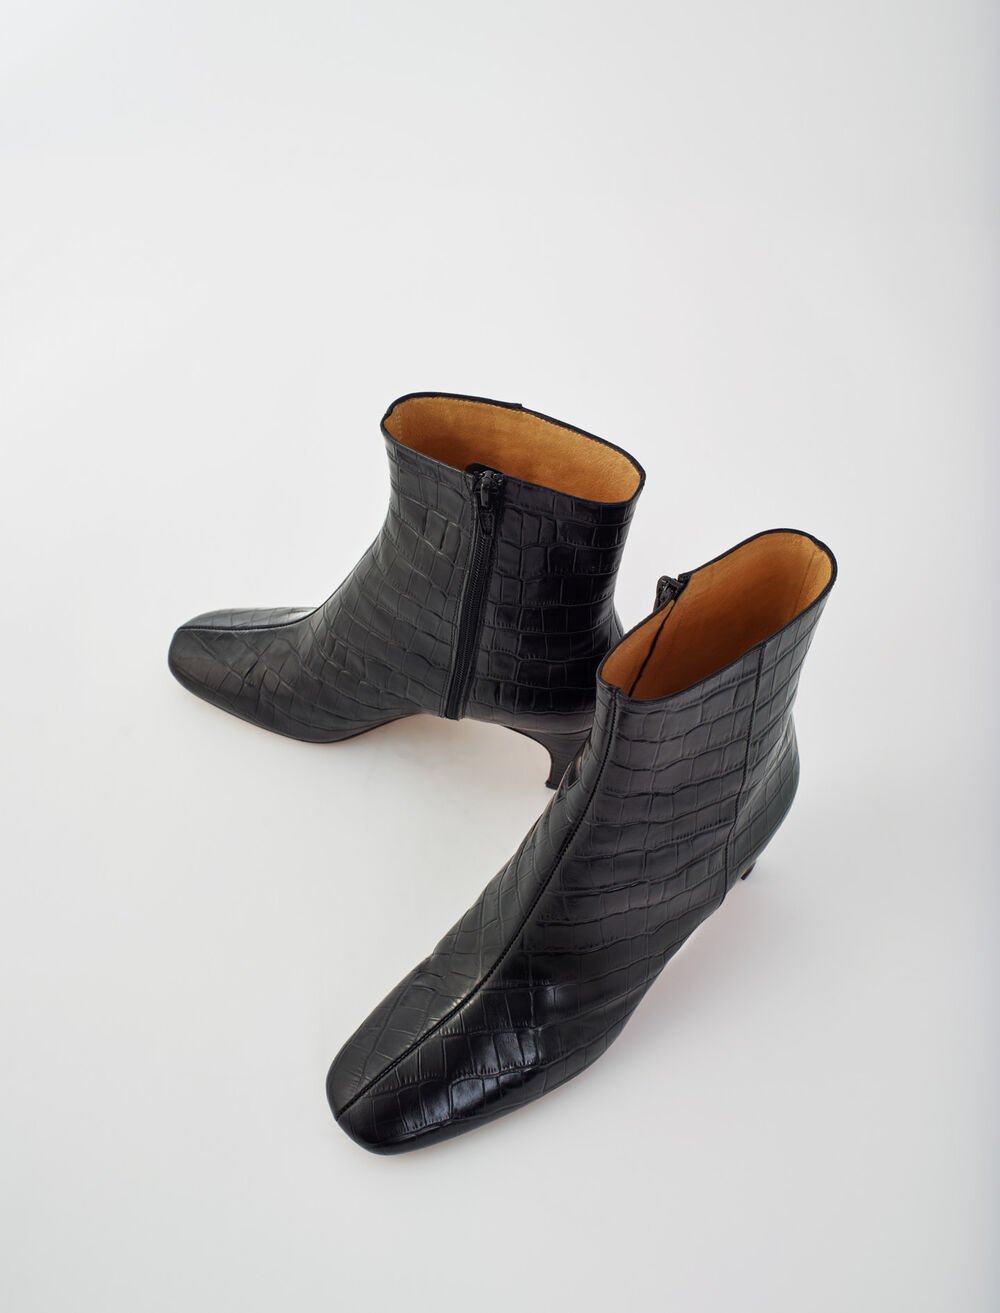 120FELICETTECROCO NOIR Croc-effect embossed leather boots - Booties ...